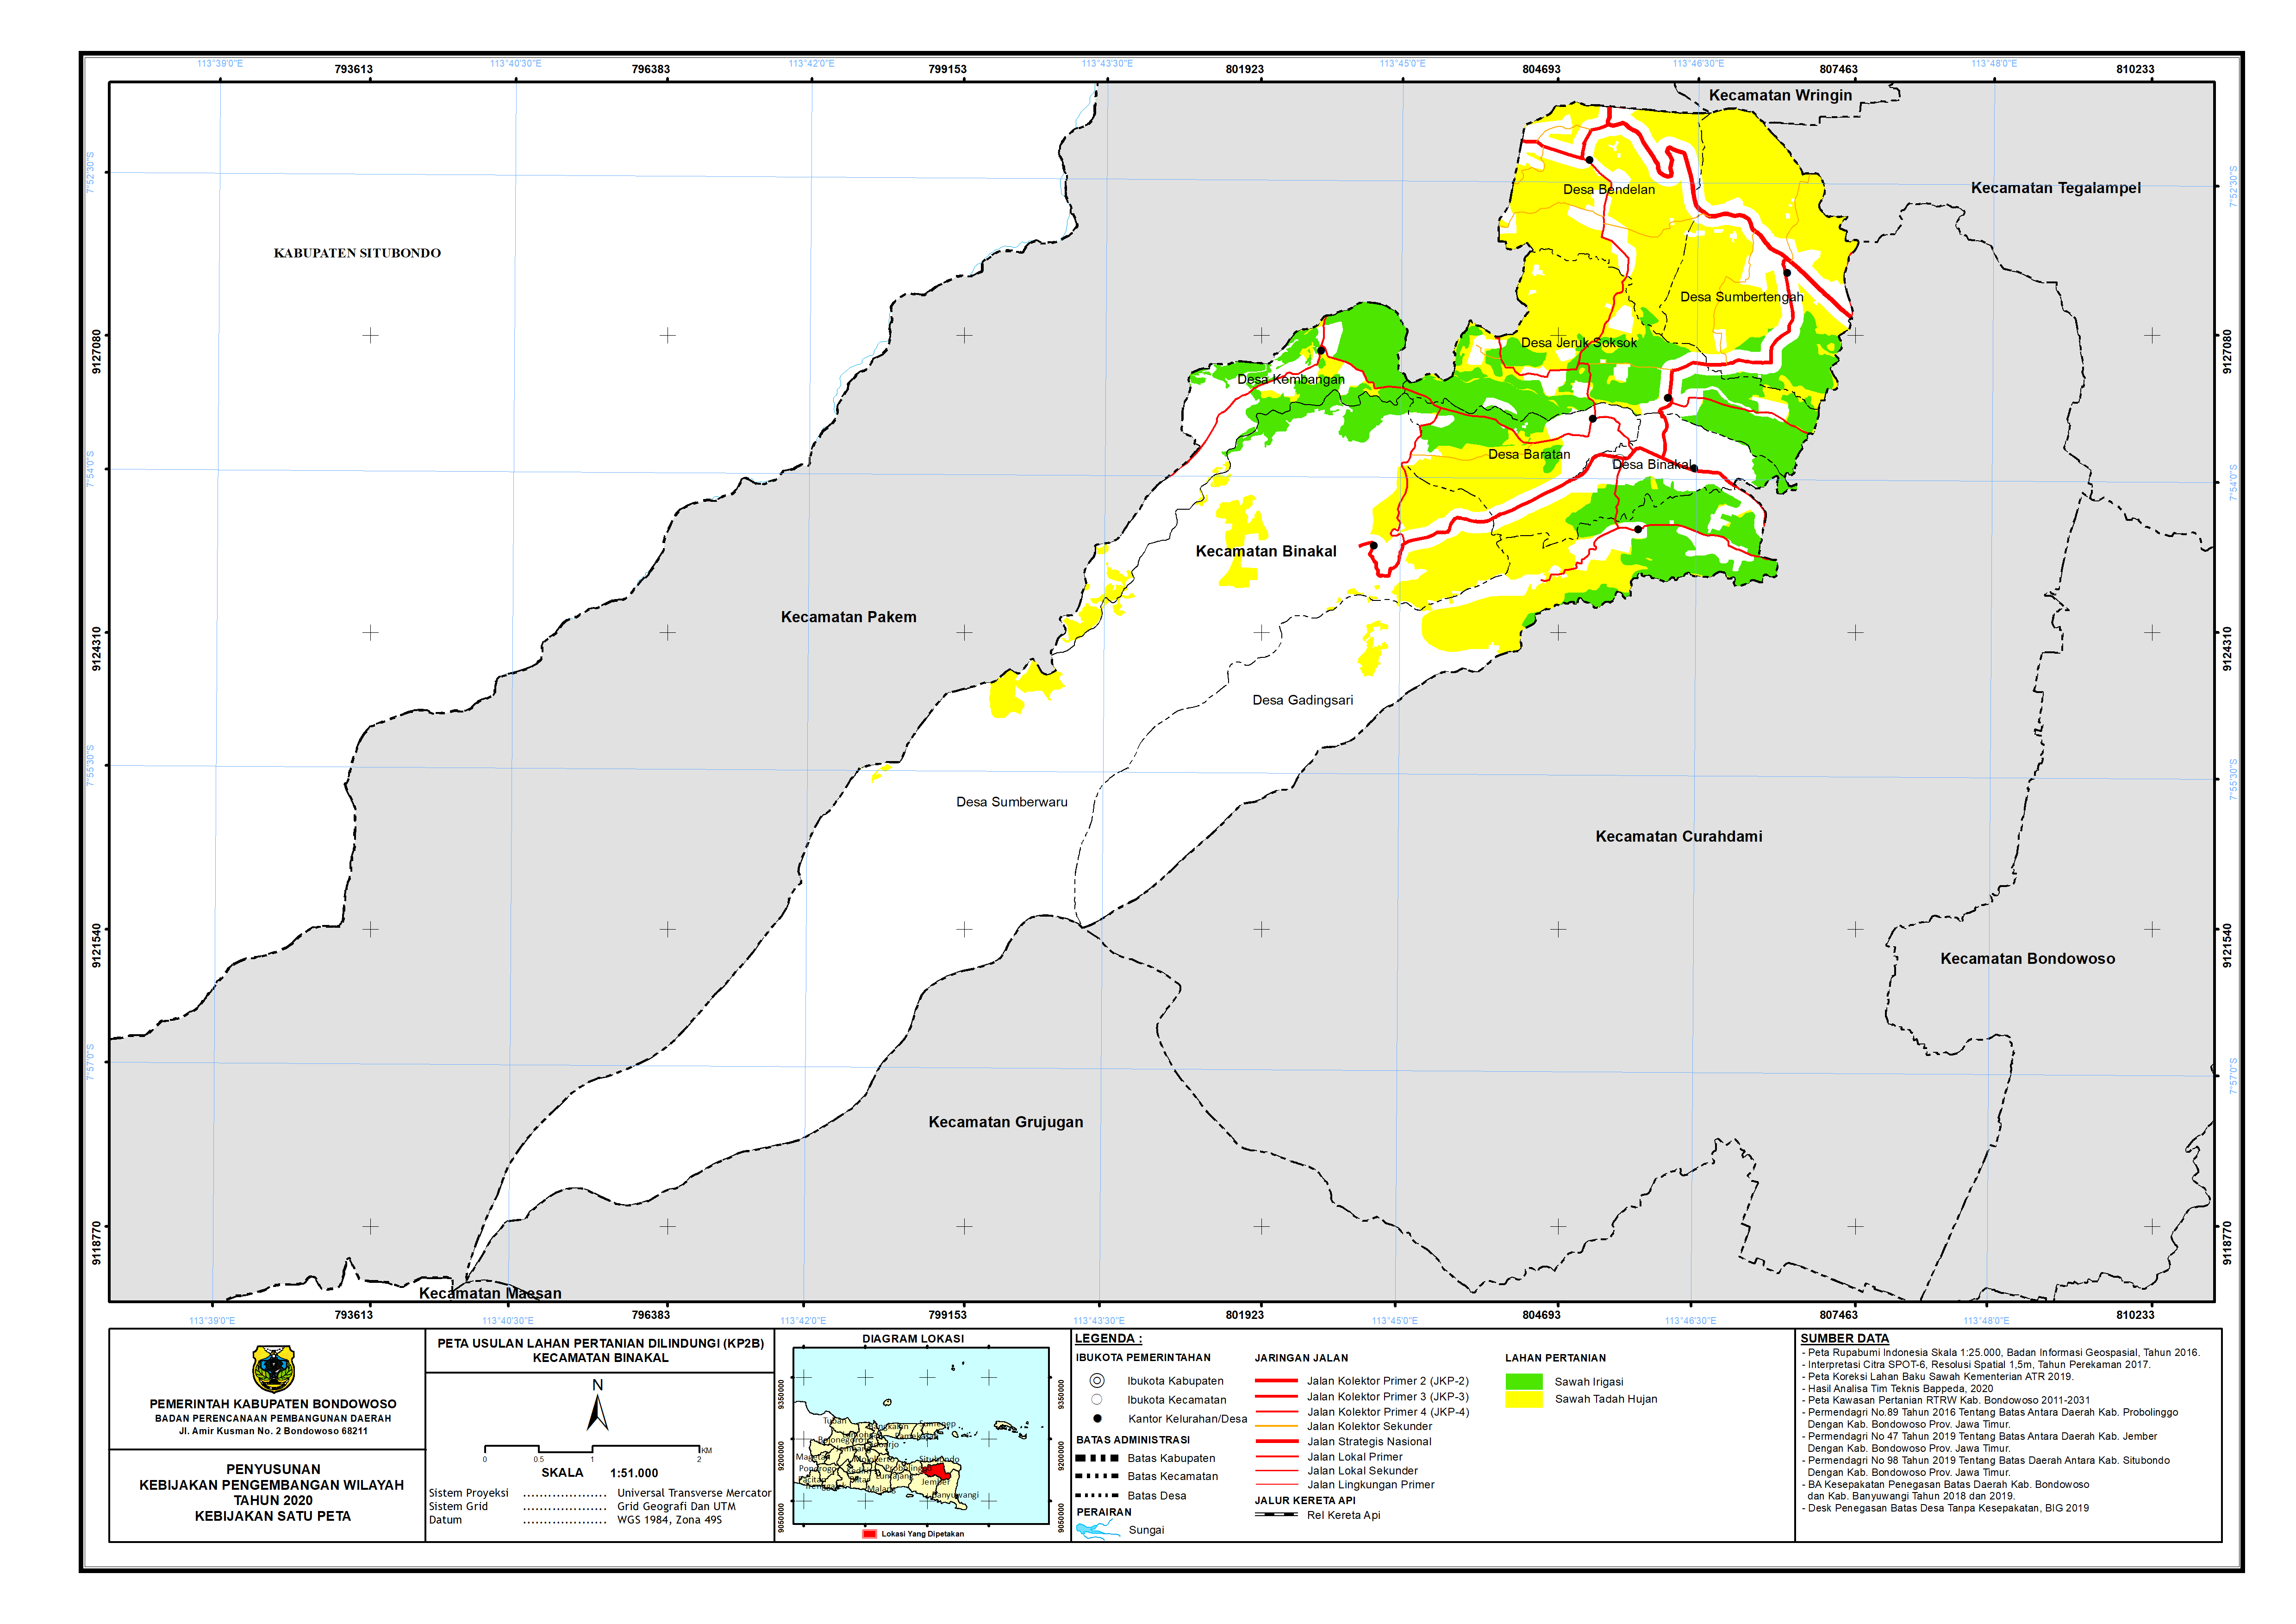 Peta Usulan Lahan Pertanian  Dilindungi Kecamatan Binakal.png